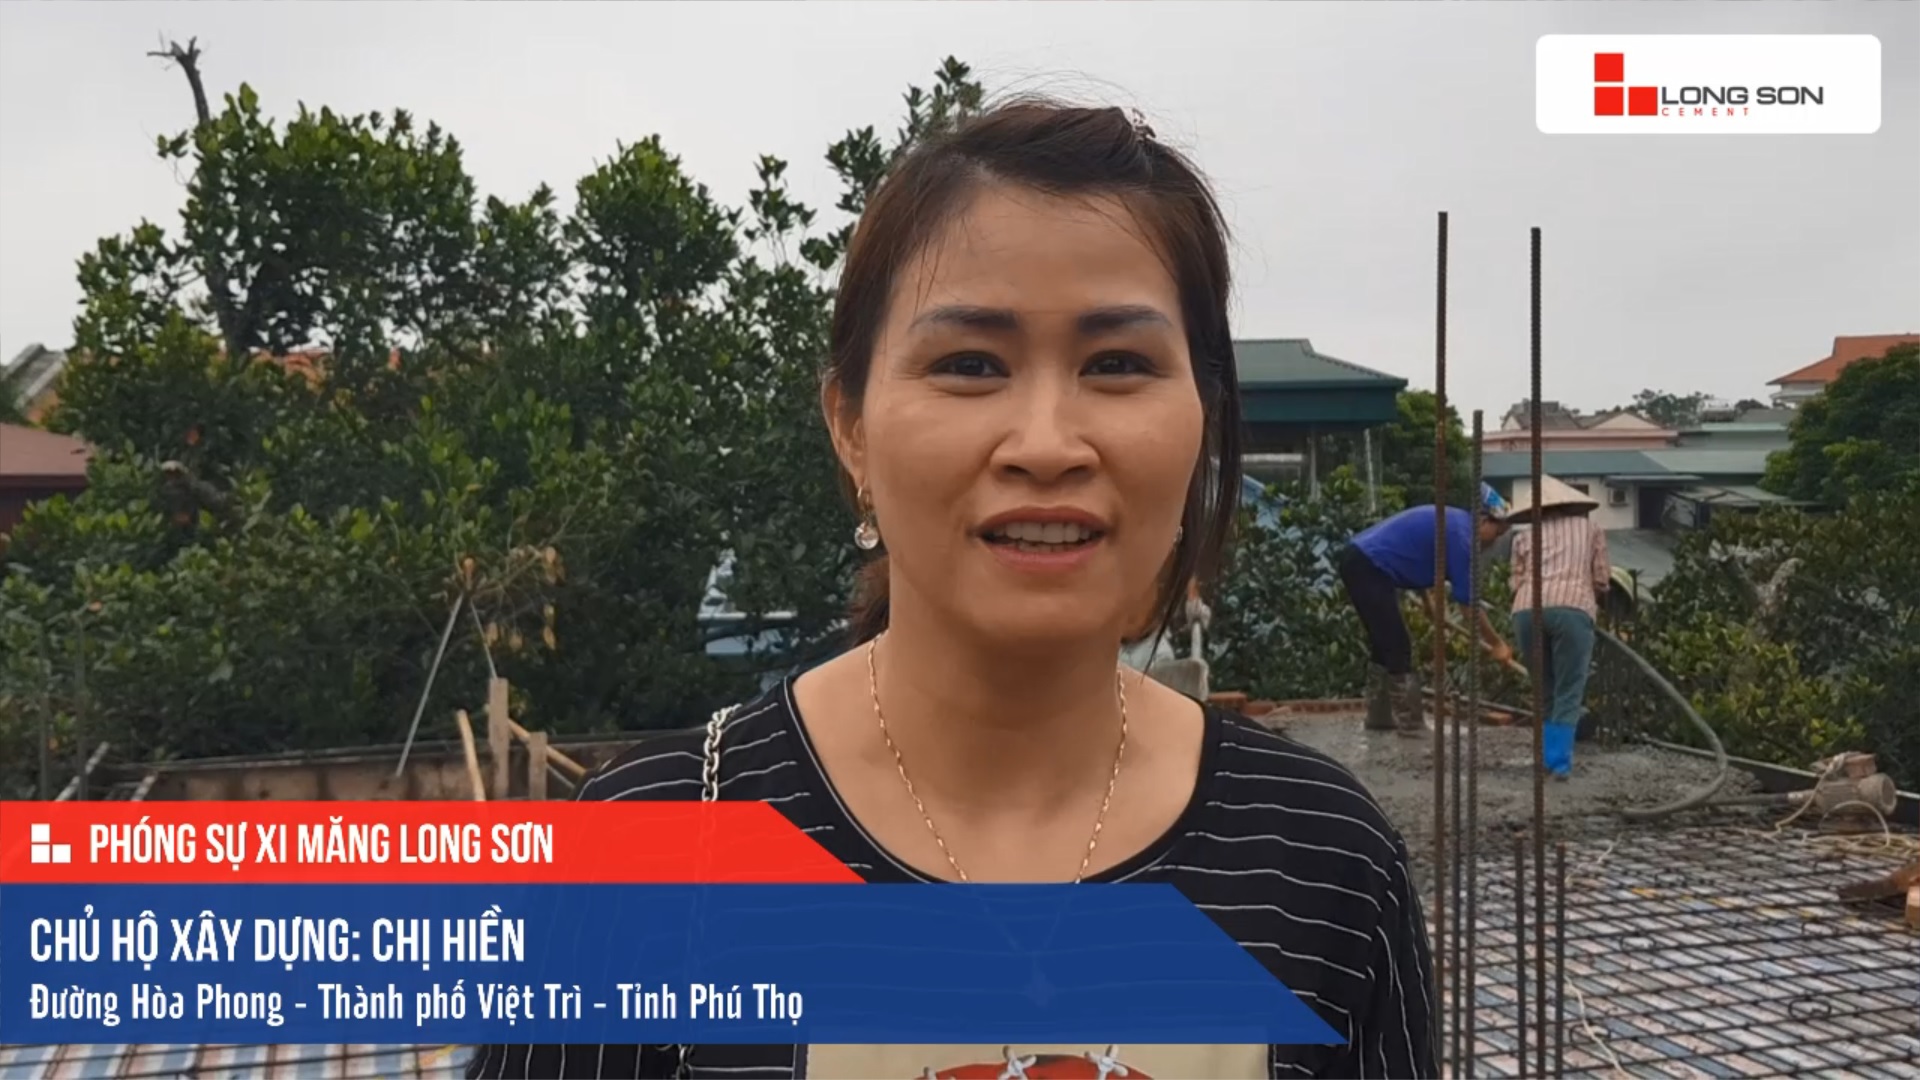 Phóng sự công trình sử dụng Xi măng Long Sơn tại Phú Thọ 07.10.2019